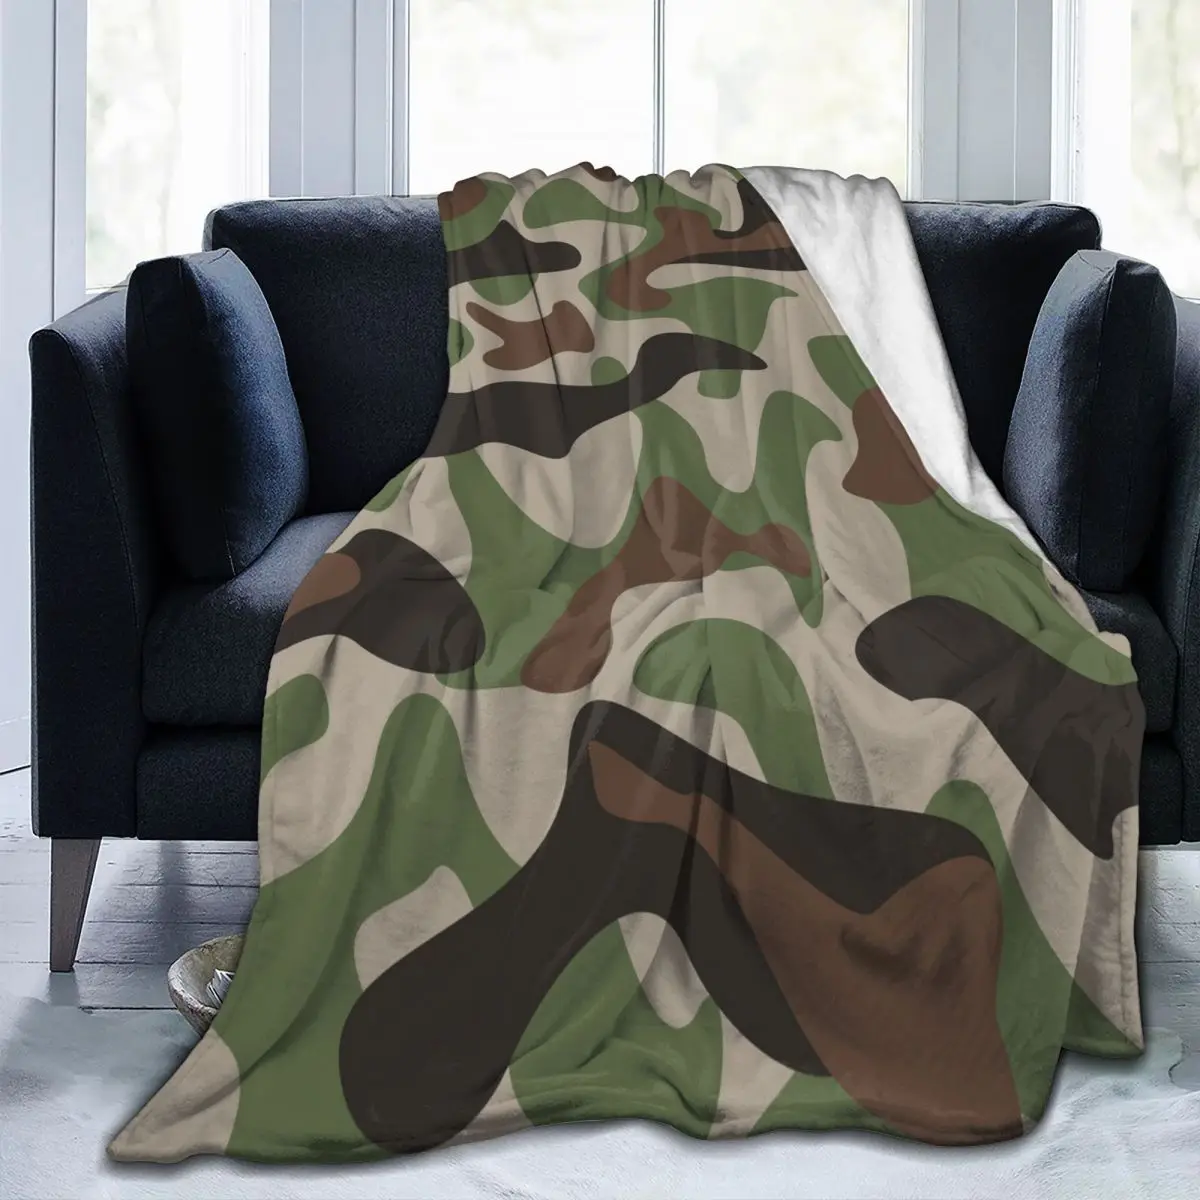 

Мягкое теплое Флисовое одеяло, классическое камуфляжное зимнее покрывало для дивана, легкое тонкое Фланелевое Одеяло 3 размера с механичес...